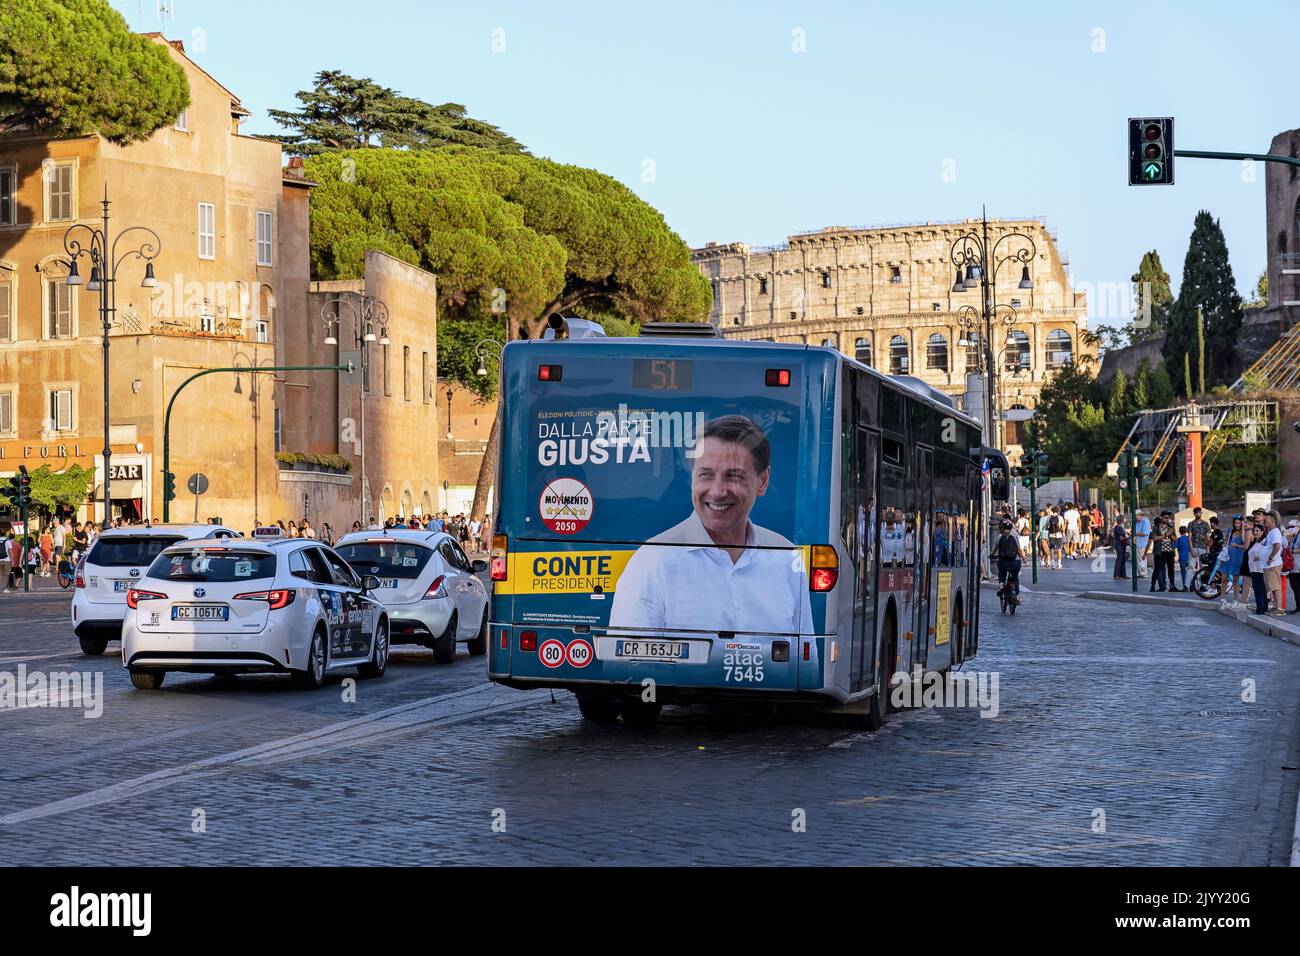 Élections générales italiennes sur 25 septembre 2022. Giuseppe Conte leader de Movimento 5 Stelle party M5S, affiche sur un bus de transport public. Rome, Italie Banque D'Images